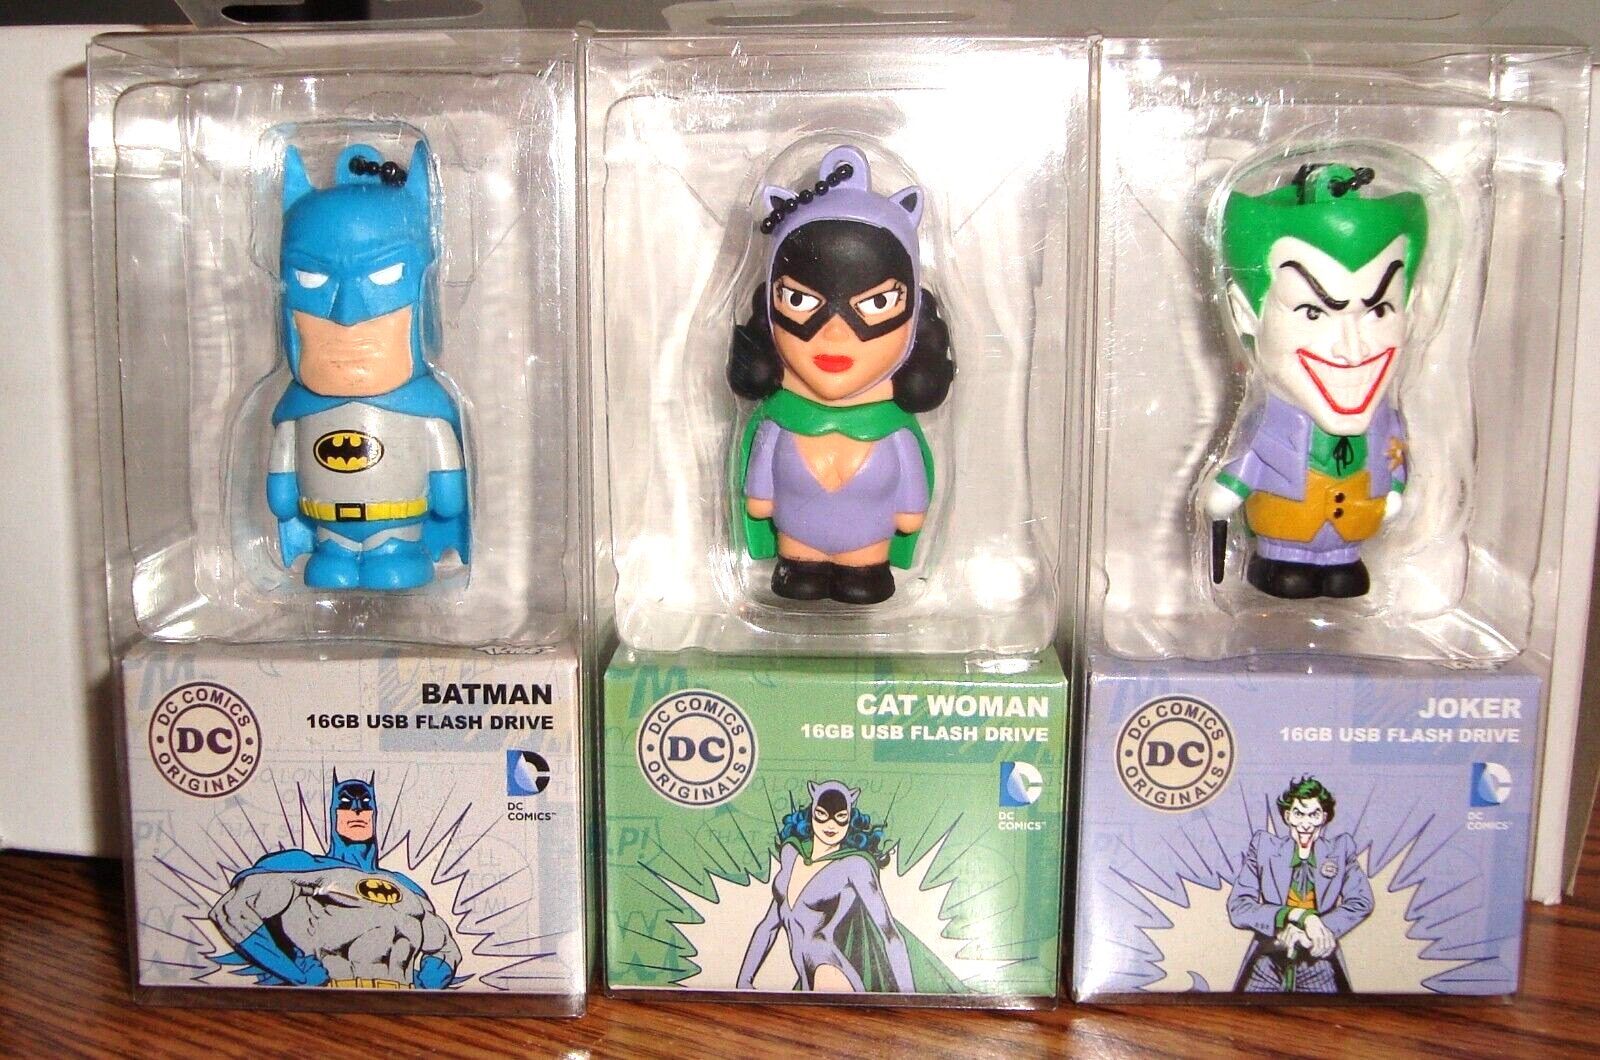 NEW (3) DC ComicsTRIBE USB Flash Drives 16 gb each: JOKER; BATMAN; CAT WOMAN nip